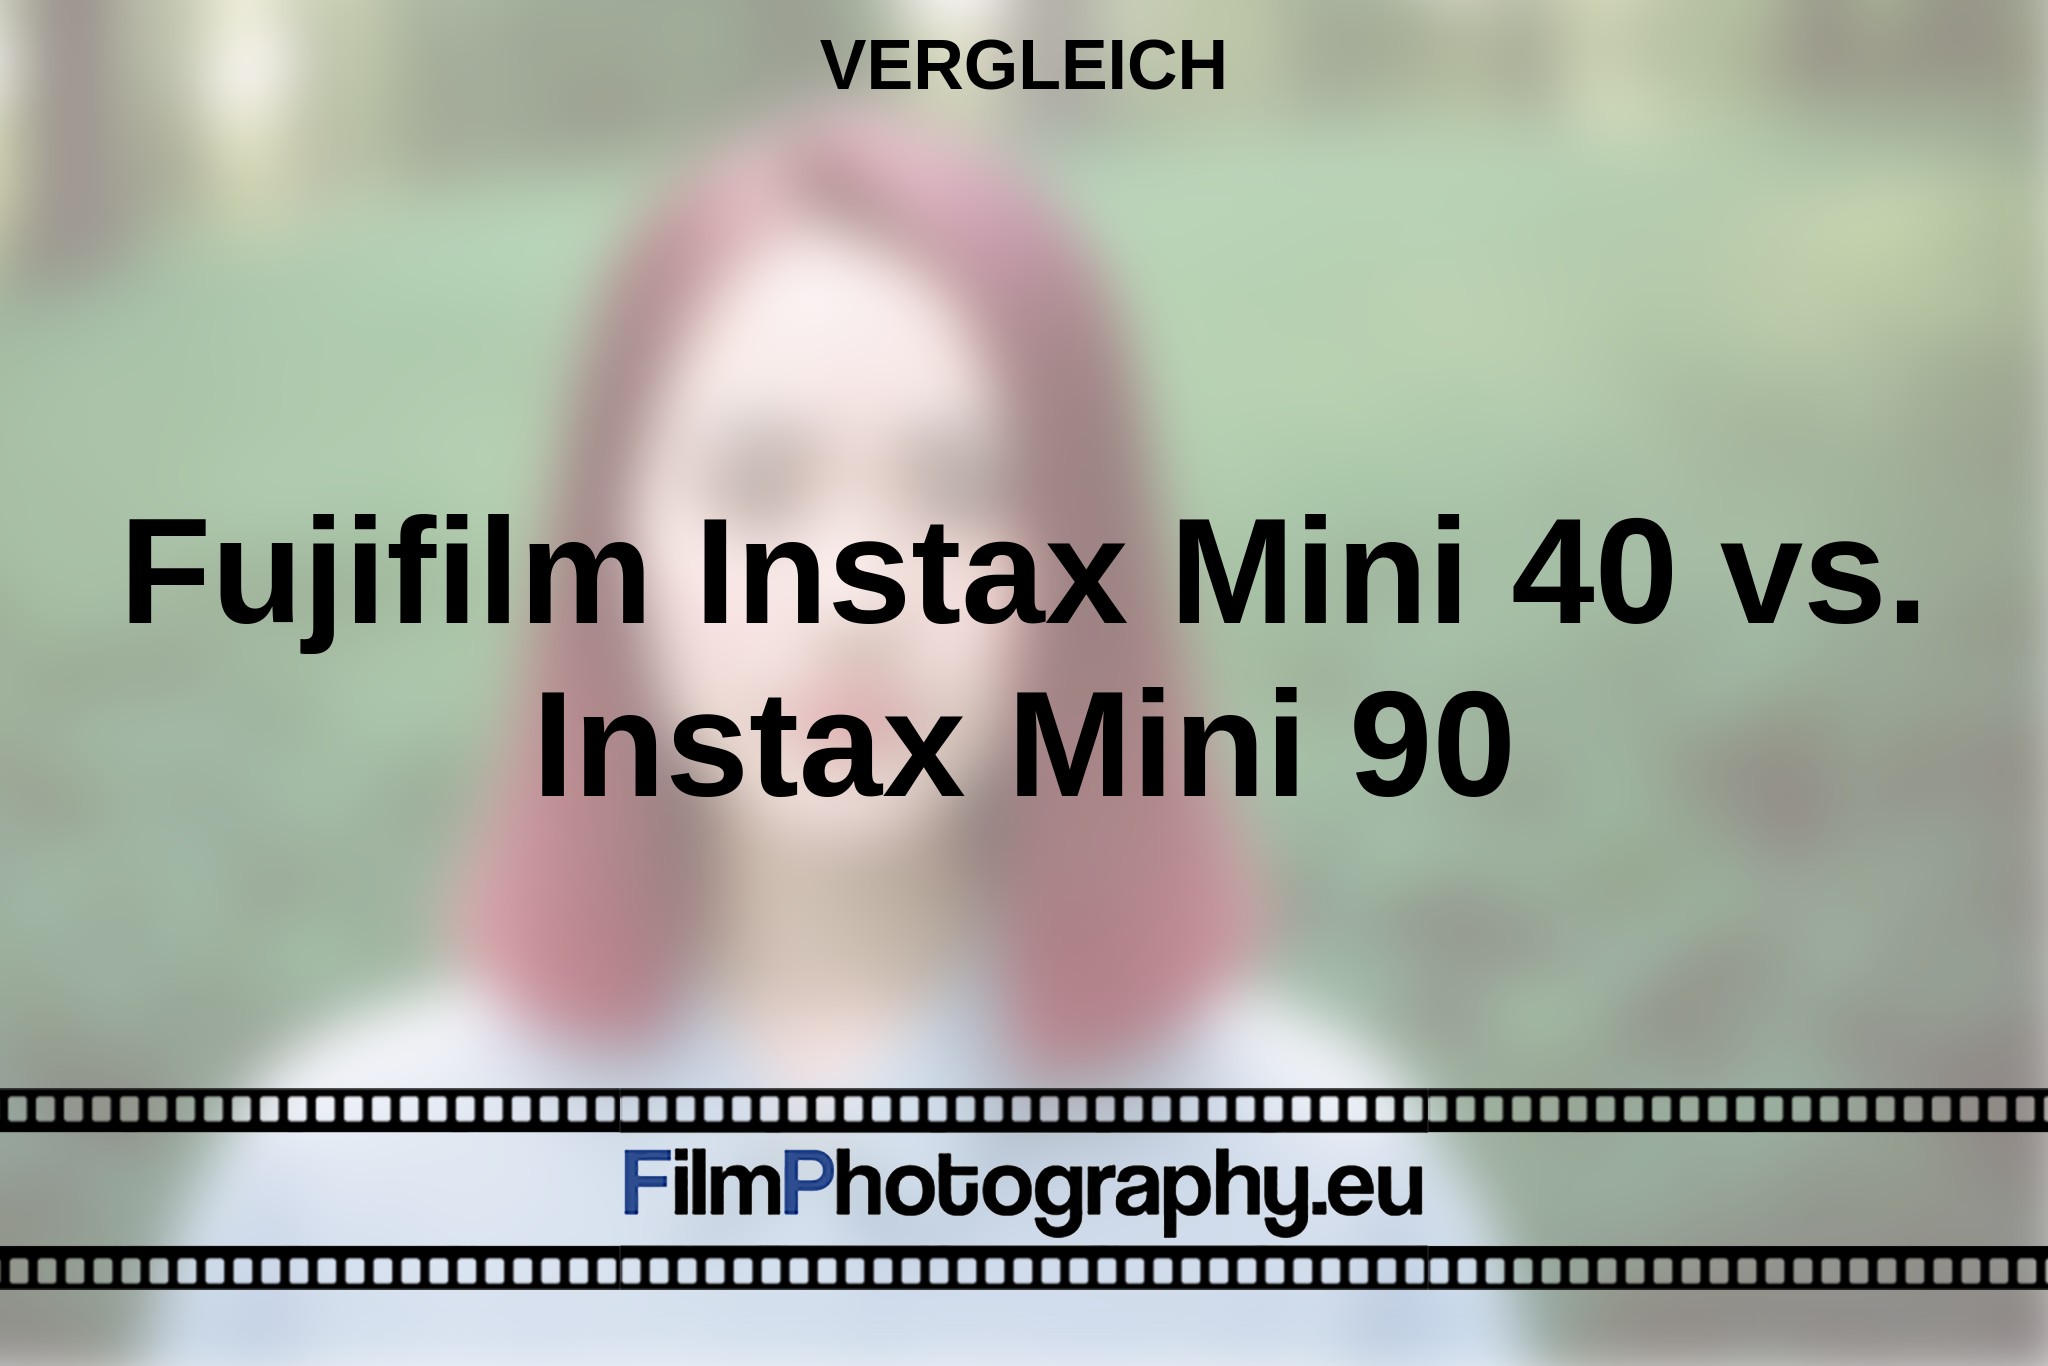 fujifilm-instax-mini-40-vs-instax-mini-90-vergleich-bnv.jpg